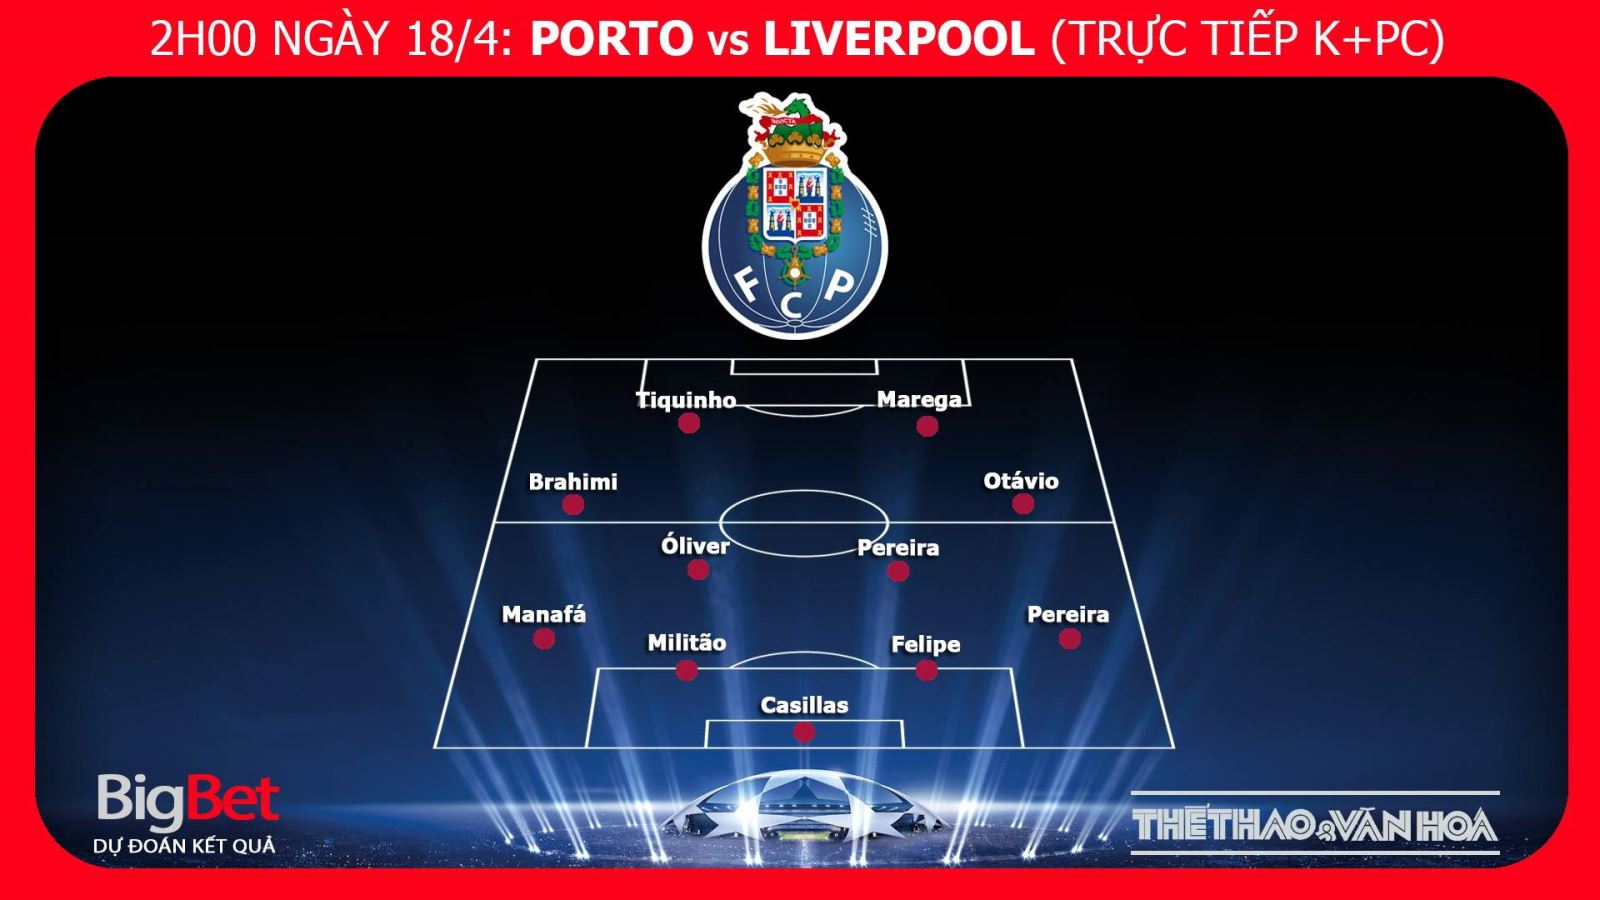 Liverpool, Porto, Porto vs Liverpool, dự đoán Porto vs Liverpool, kèo Liverpool vs Porto, kèo Liverpool, kèo Porto, trực tiếp Porto vs Liverpool, trực tiếp cúp C1, tỷ lệ